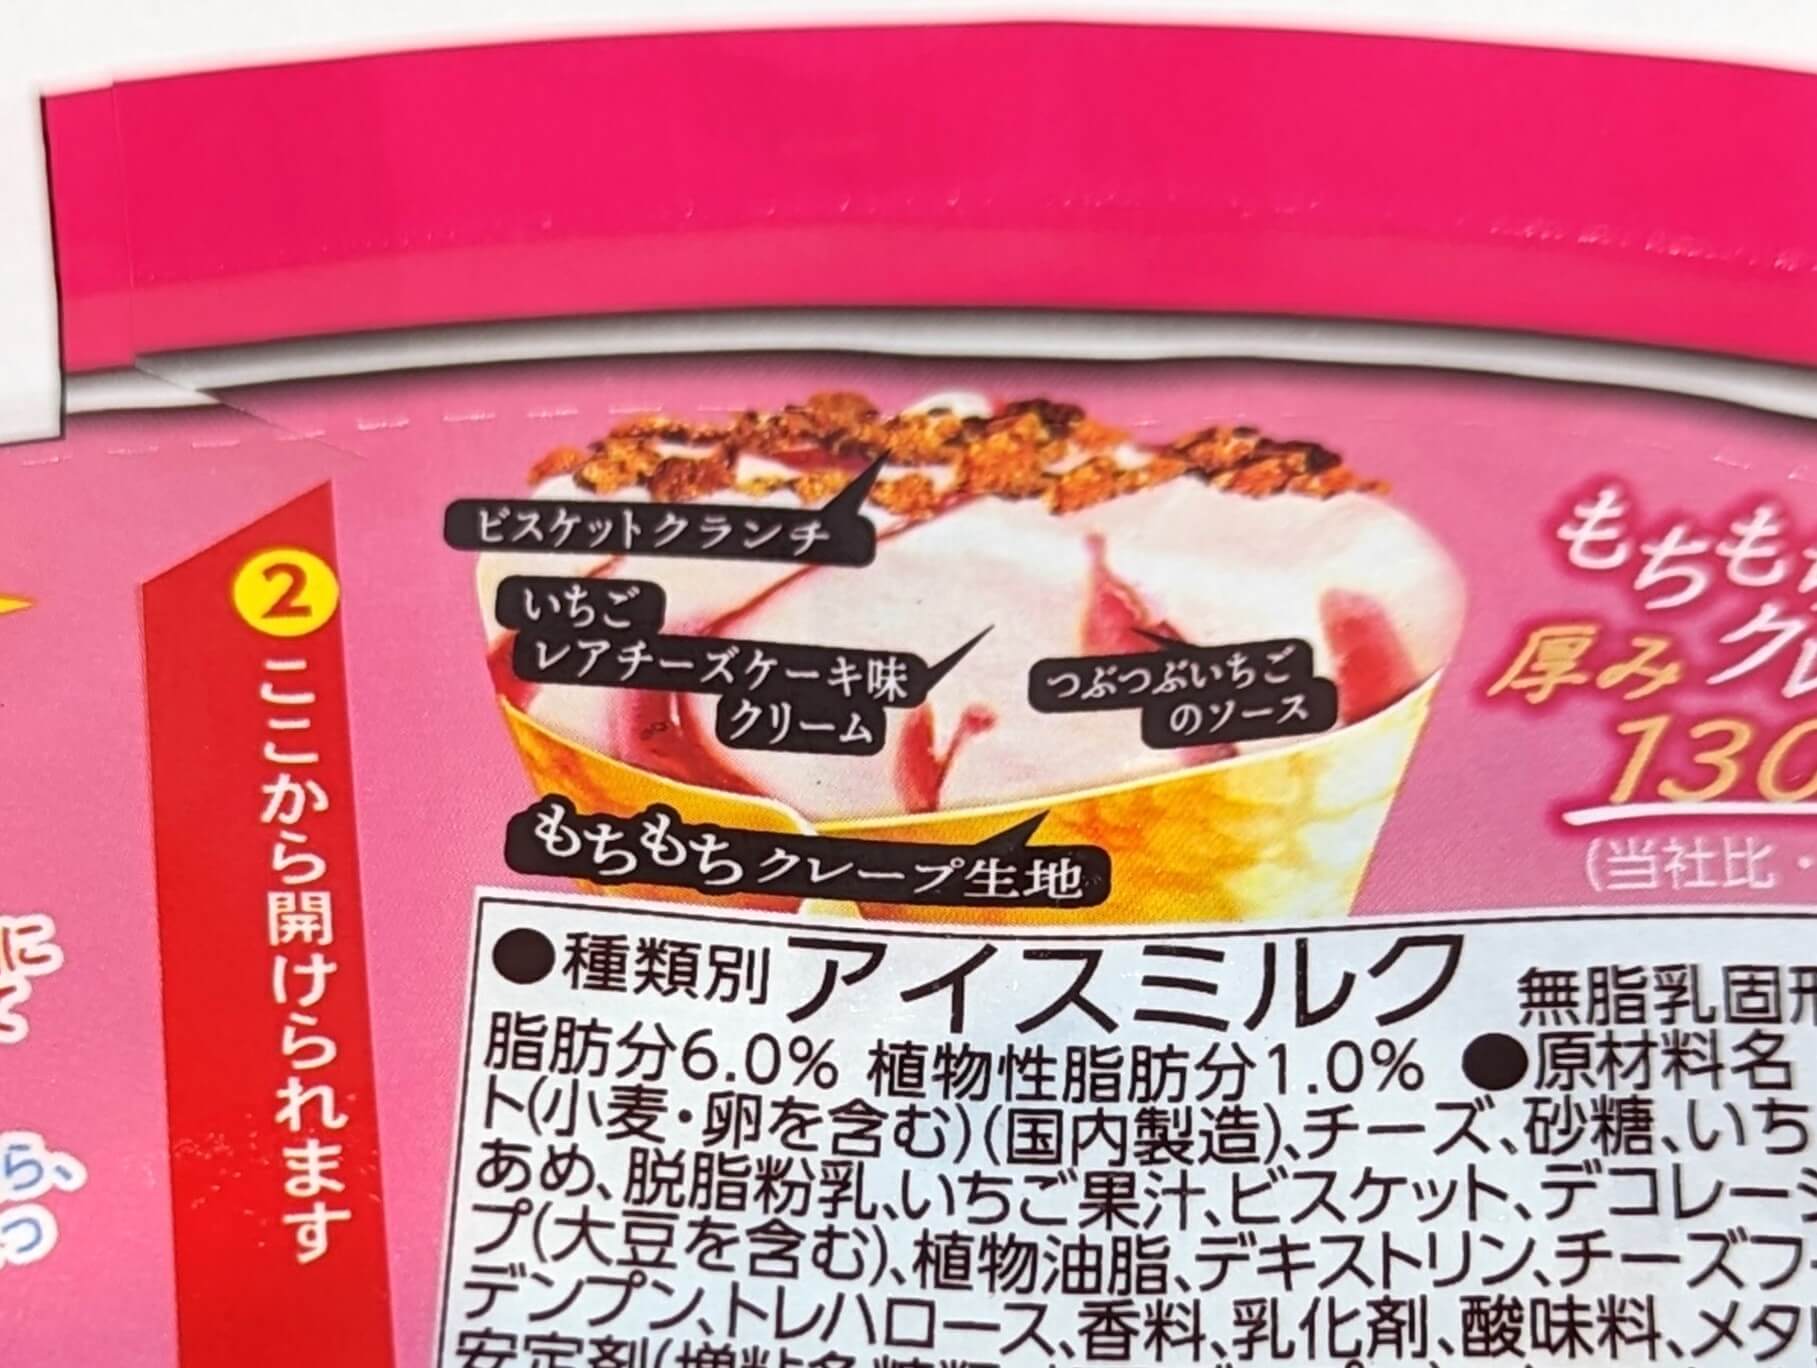 セブンイレブン限定・森永製菓 ザ・クレープ 苺のチーズケーキ味